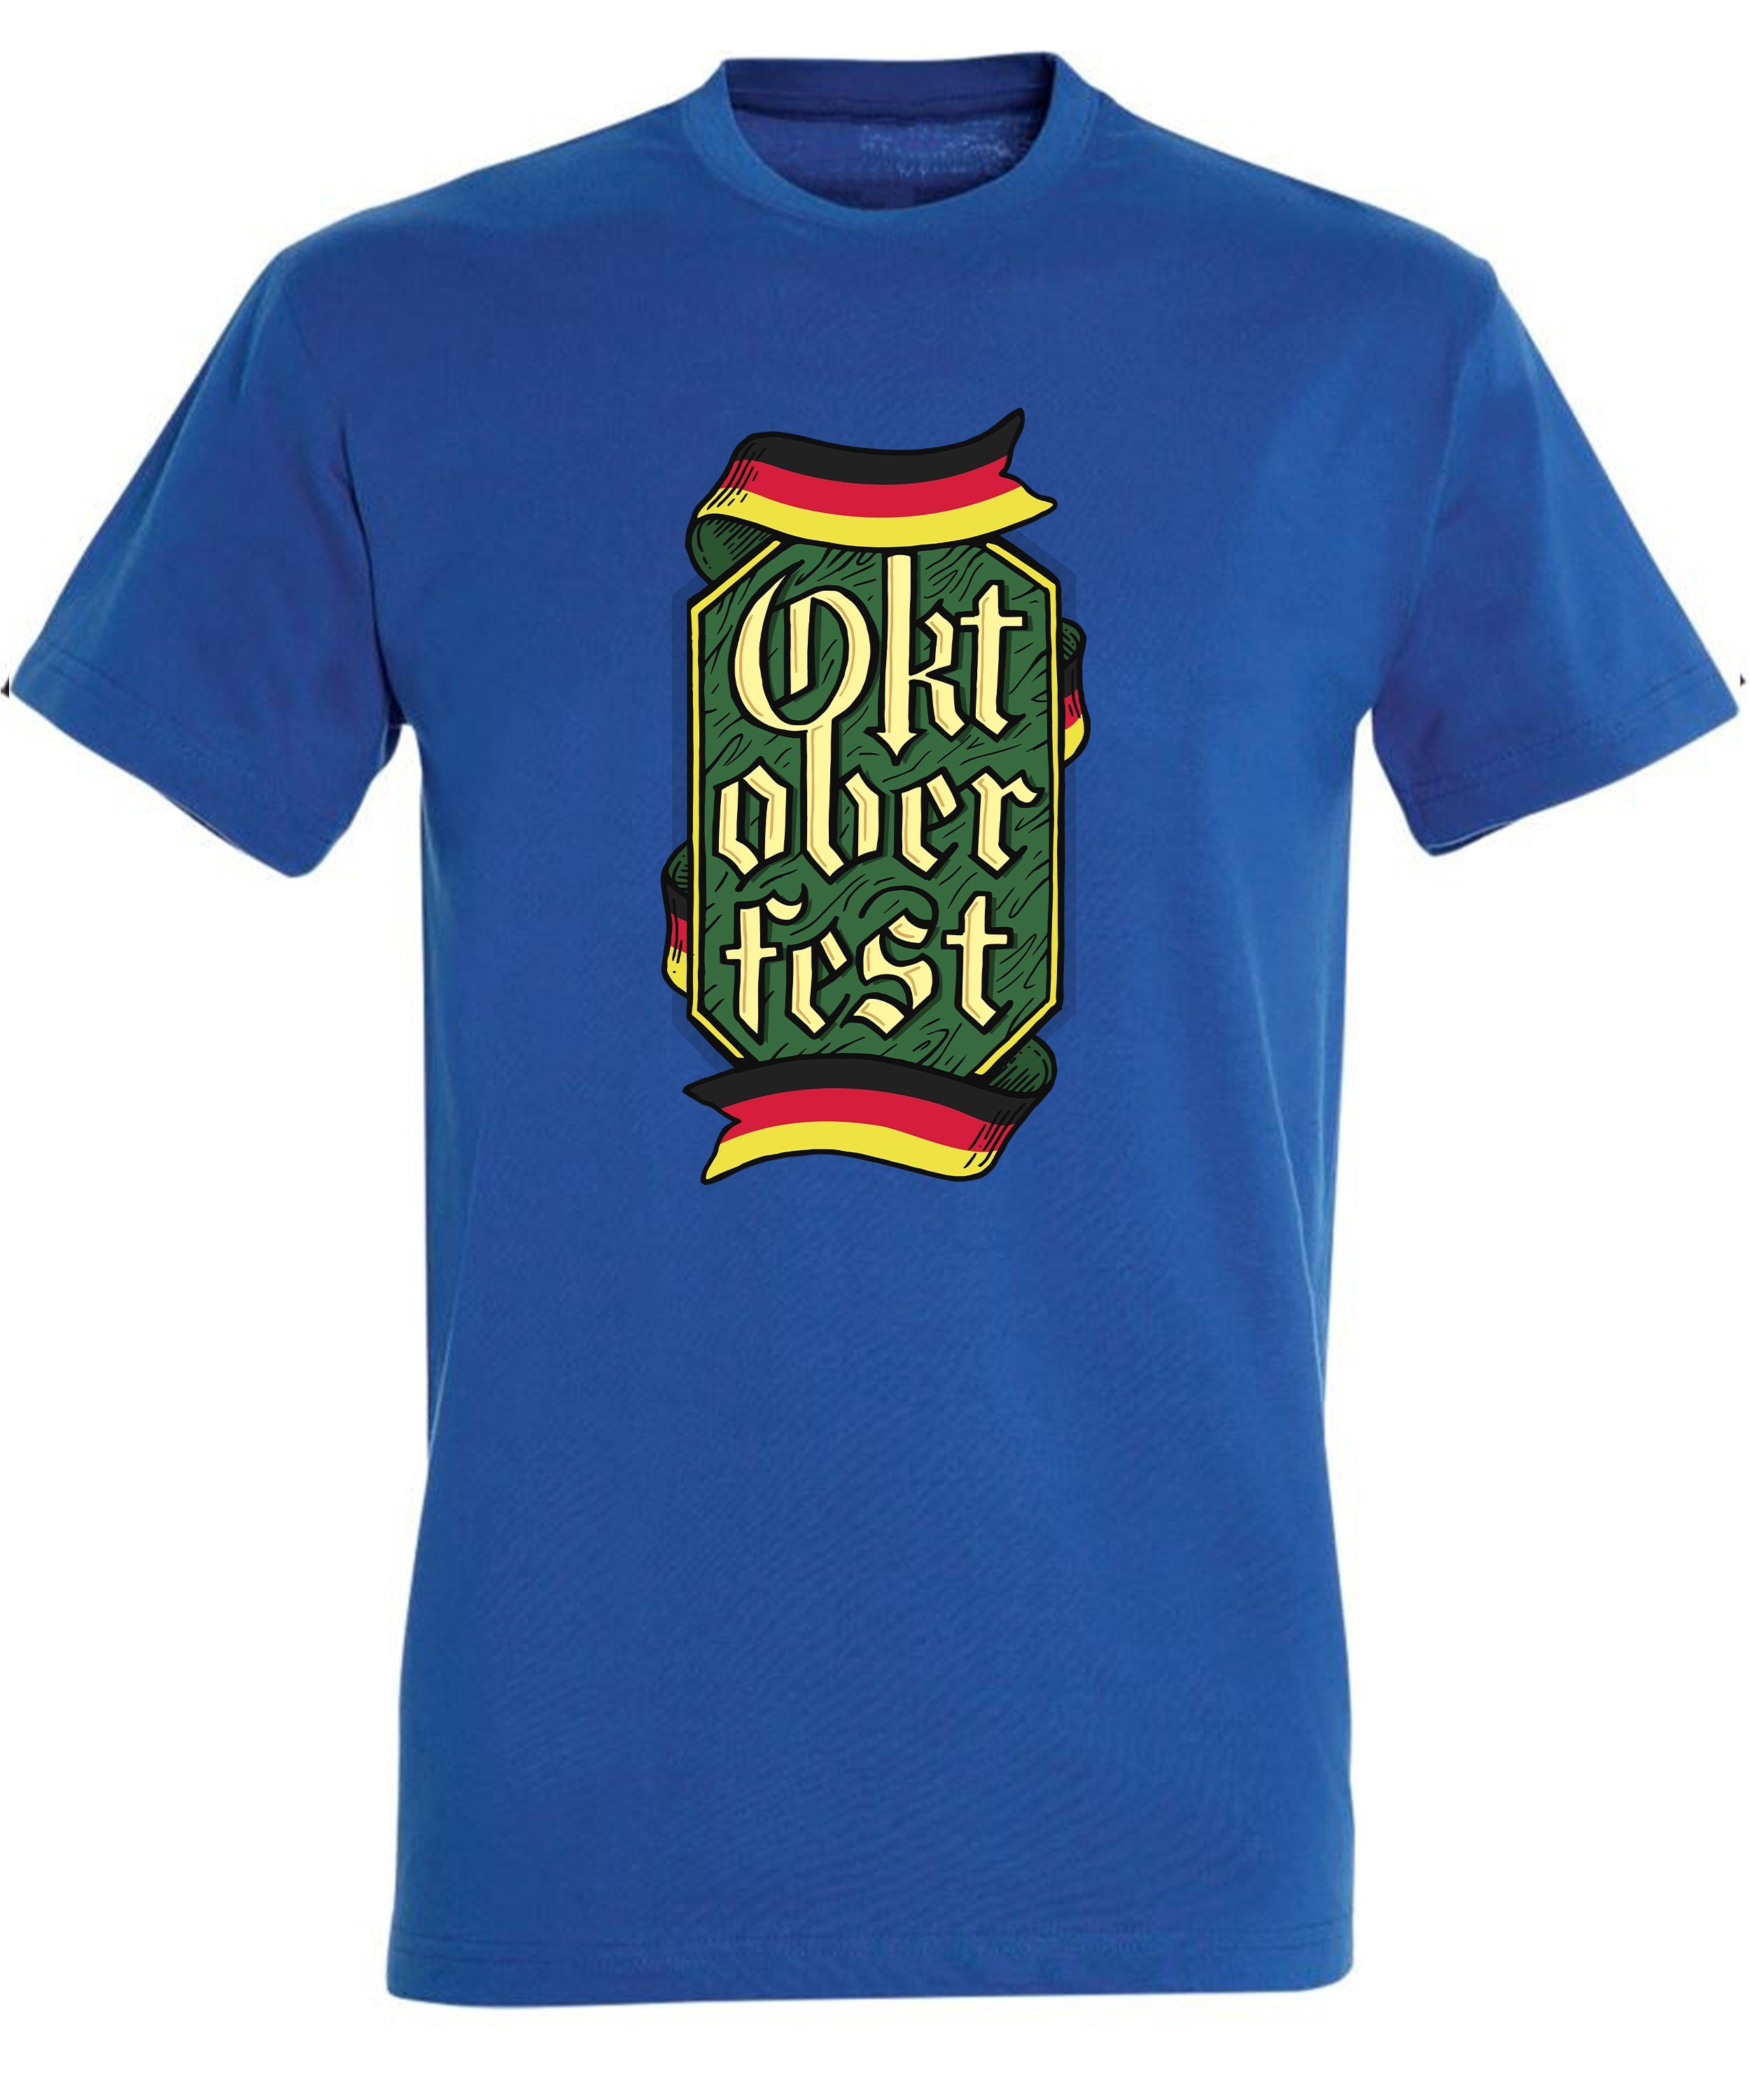 - MyDesign24 Fit, Party T-Shirt Shirt Trinkshirt blau Regular Oktoberfest T-Shirt Baumwollshirt i323 mit Aufdruck Herren royal